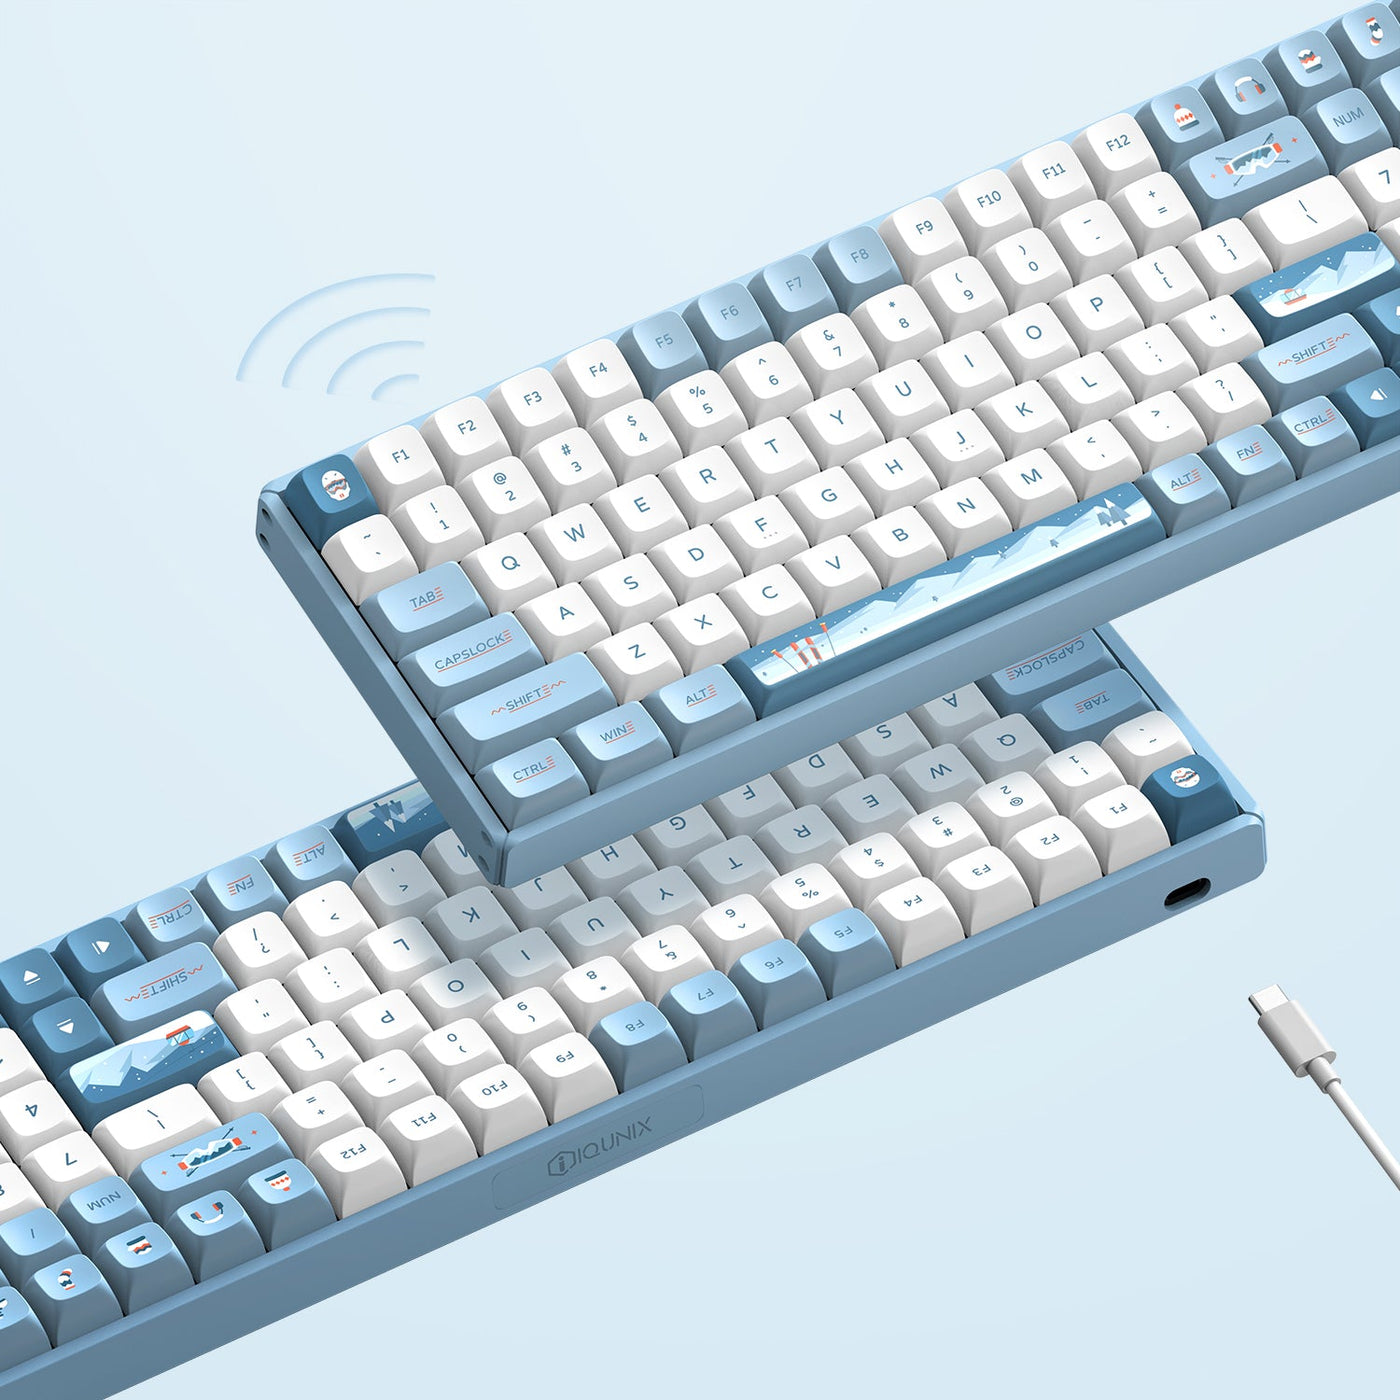  compact keyboard with numpad